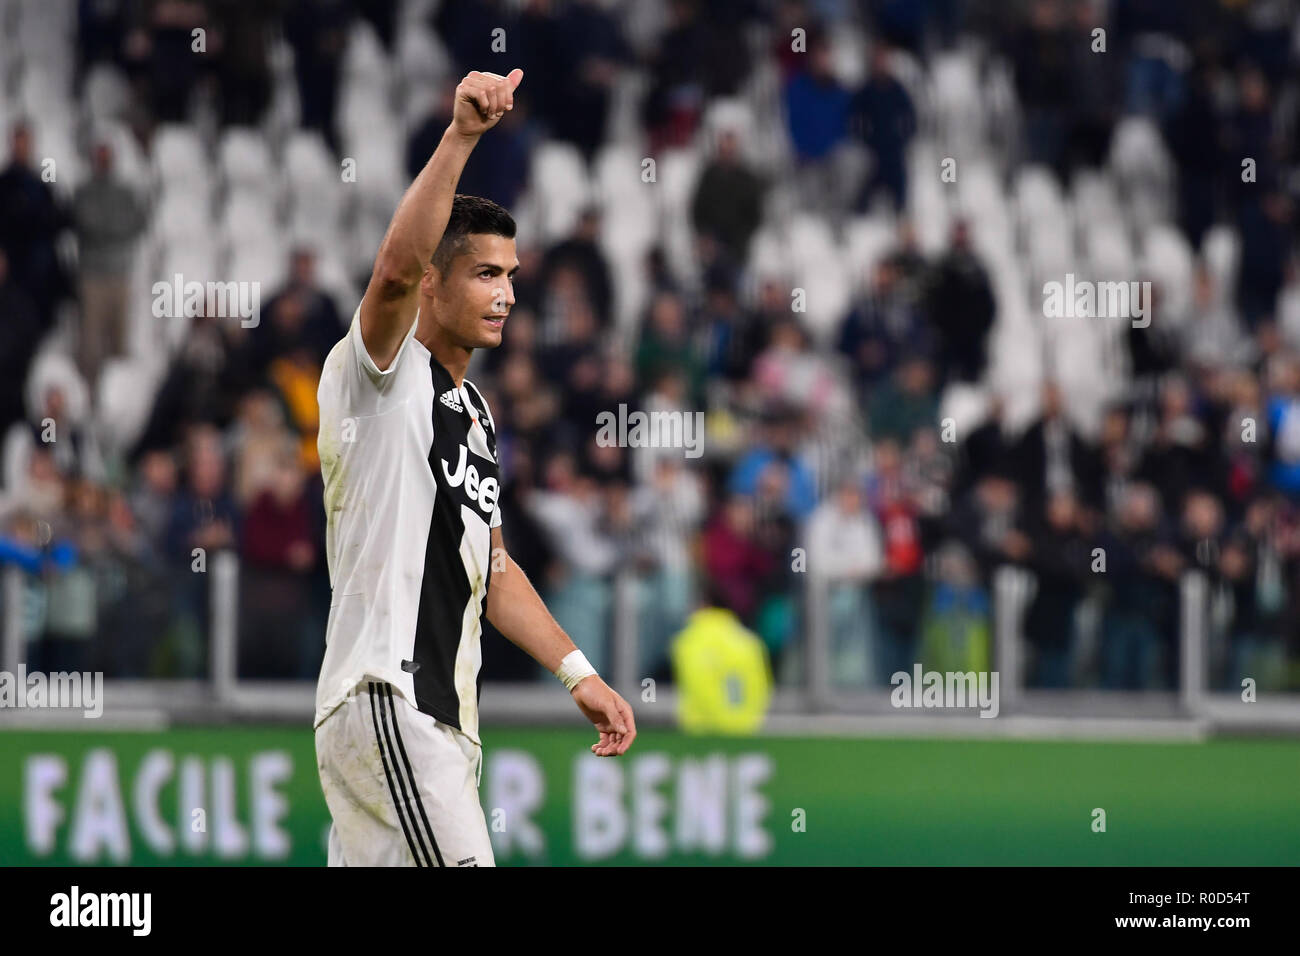 Turin, Italie. 3 novembre, 2018. Cristiano Ronaldo de la Juventus FC au cours de la série d'un match de football entre la Juventus et Cagliari Calcio de Allianz Stadium sur 3 Novembre, 2018 à Turin, Italie. Crédit : FABIO ANNEMASSE/Alamy Live News Banque D'Images